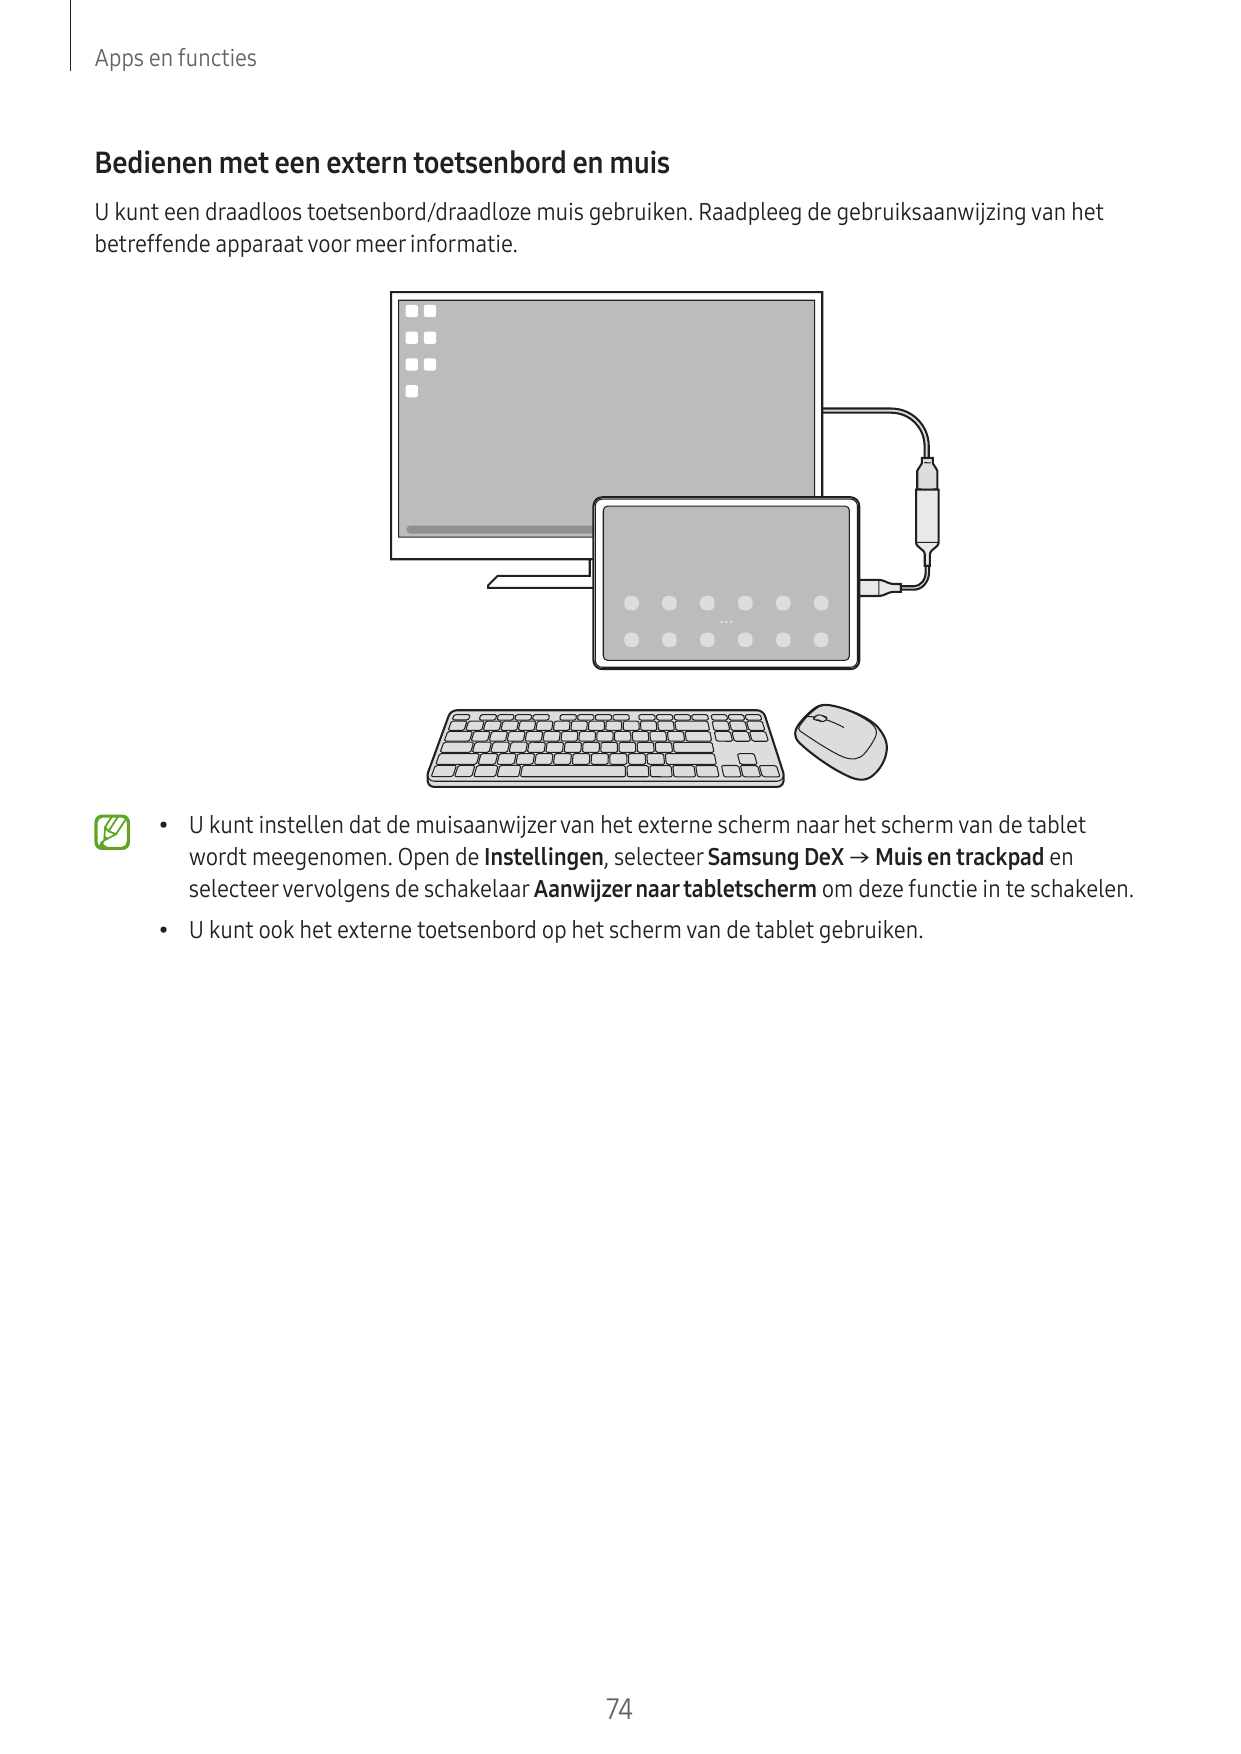 Apps en functiesBedienen met een extern toetsenbord en muisU kunt een draadloos toetsenbord/draadloze muis gebruiken. Raadpleeg 